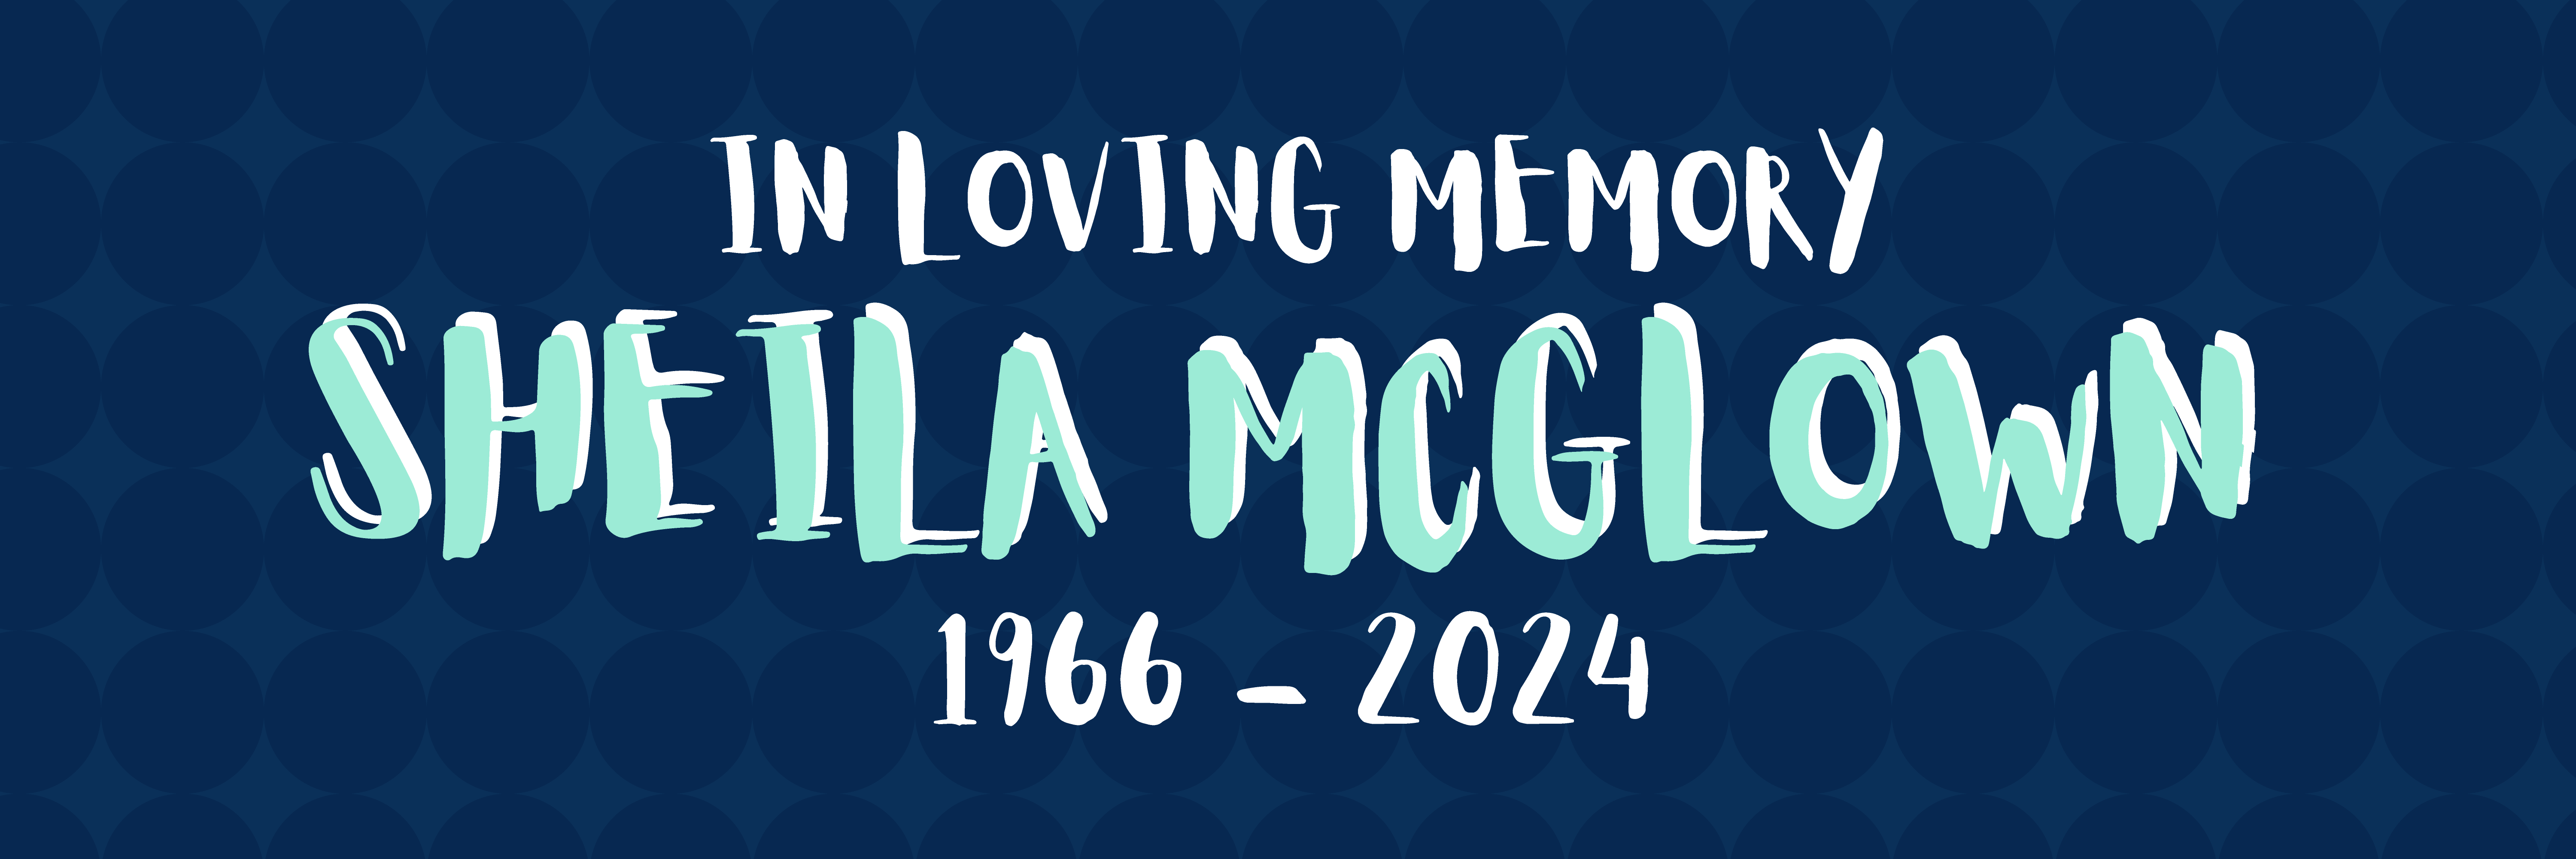 Meet Sheila McGlown banner